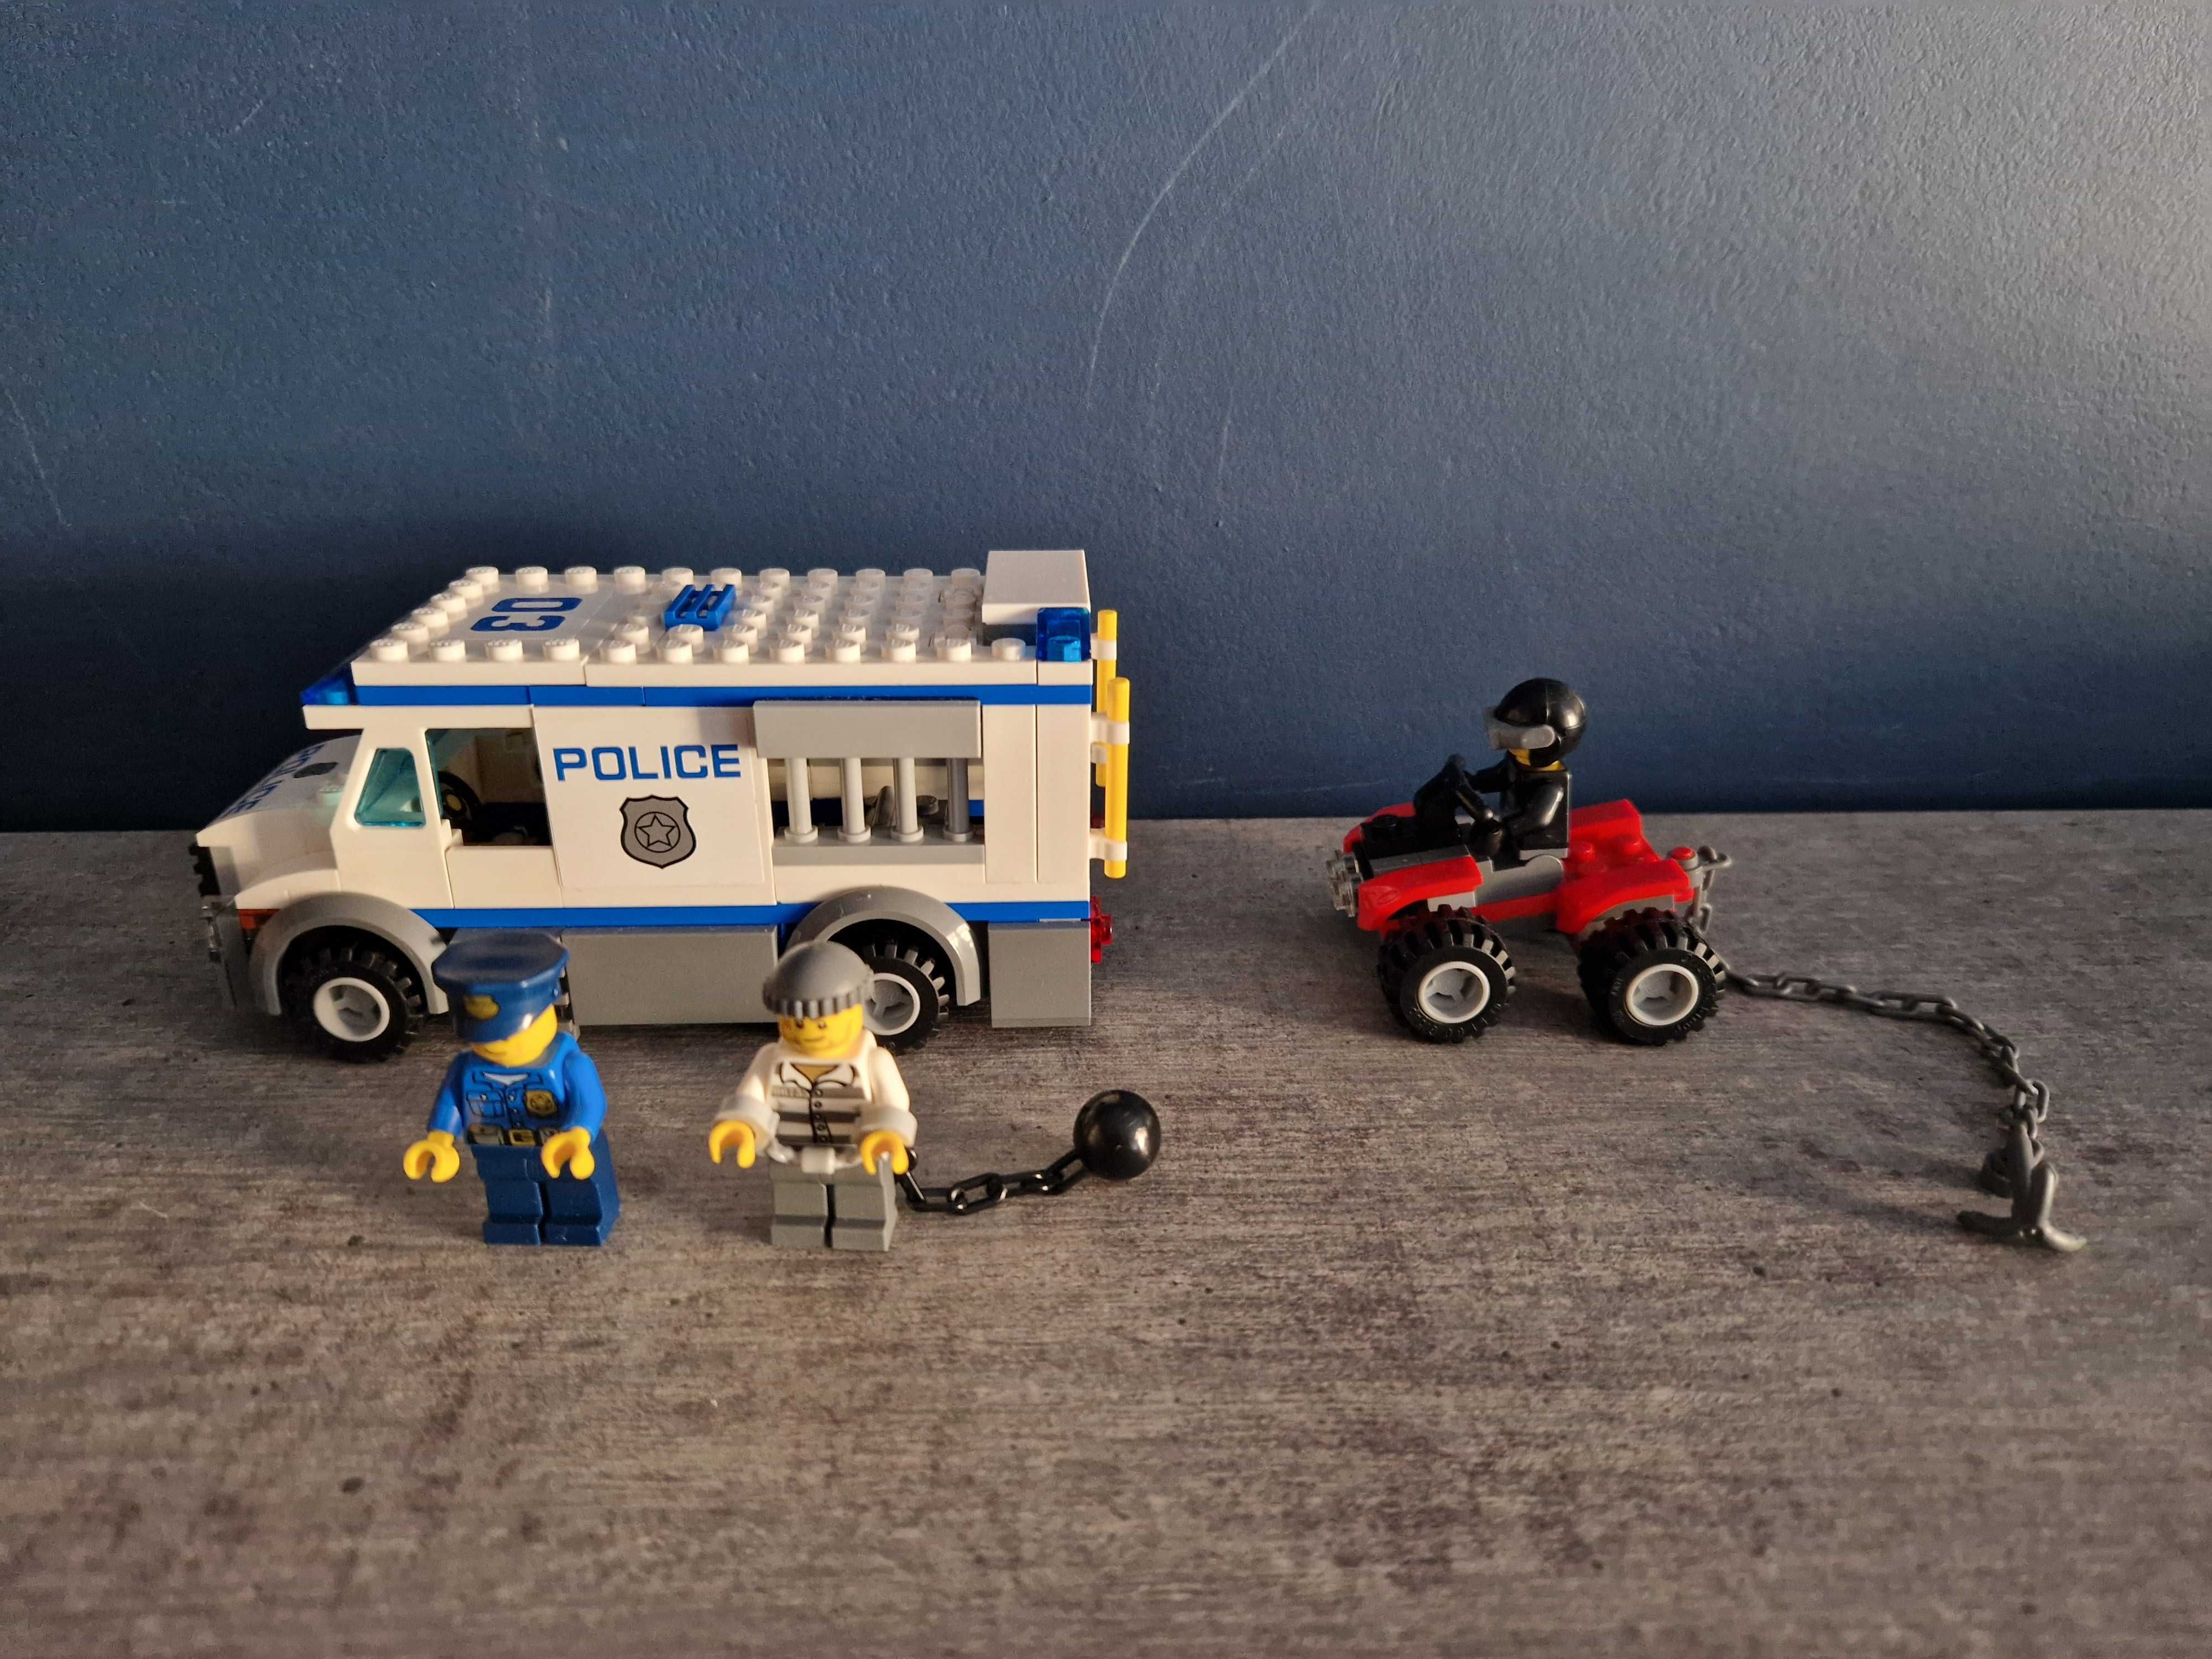 Klocki LEGO City 60043 Policja jak na zdjęciach.